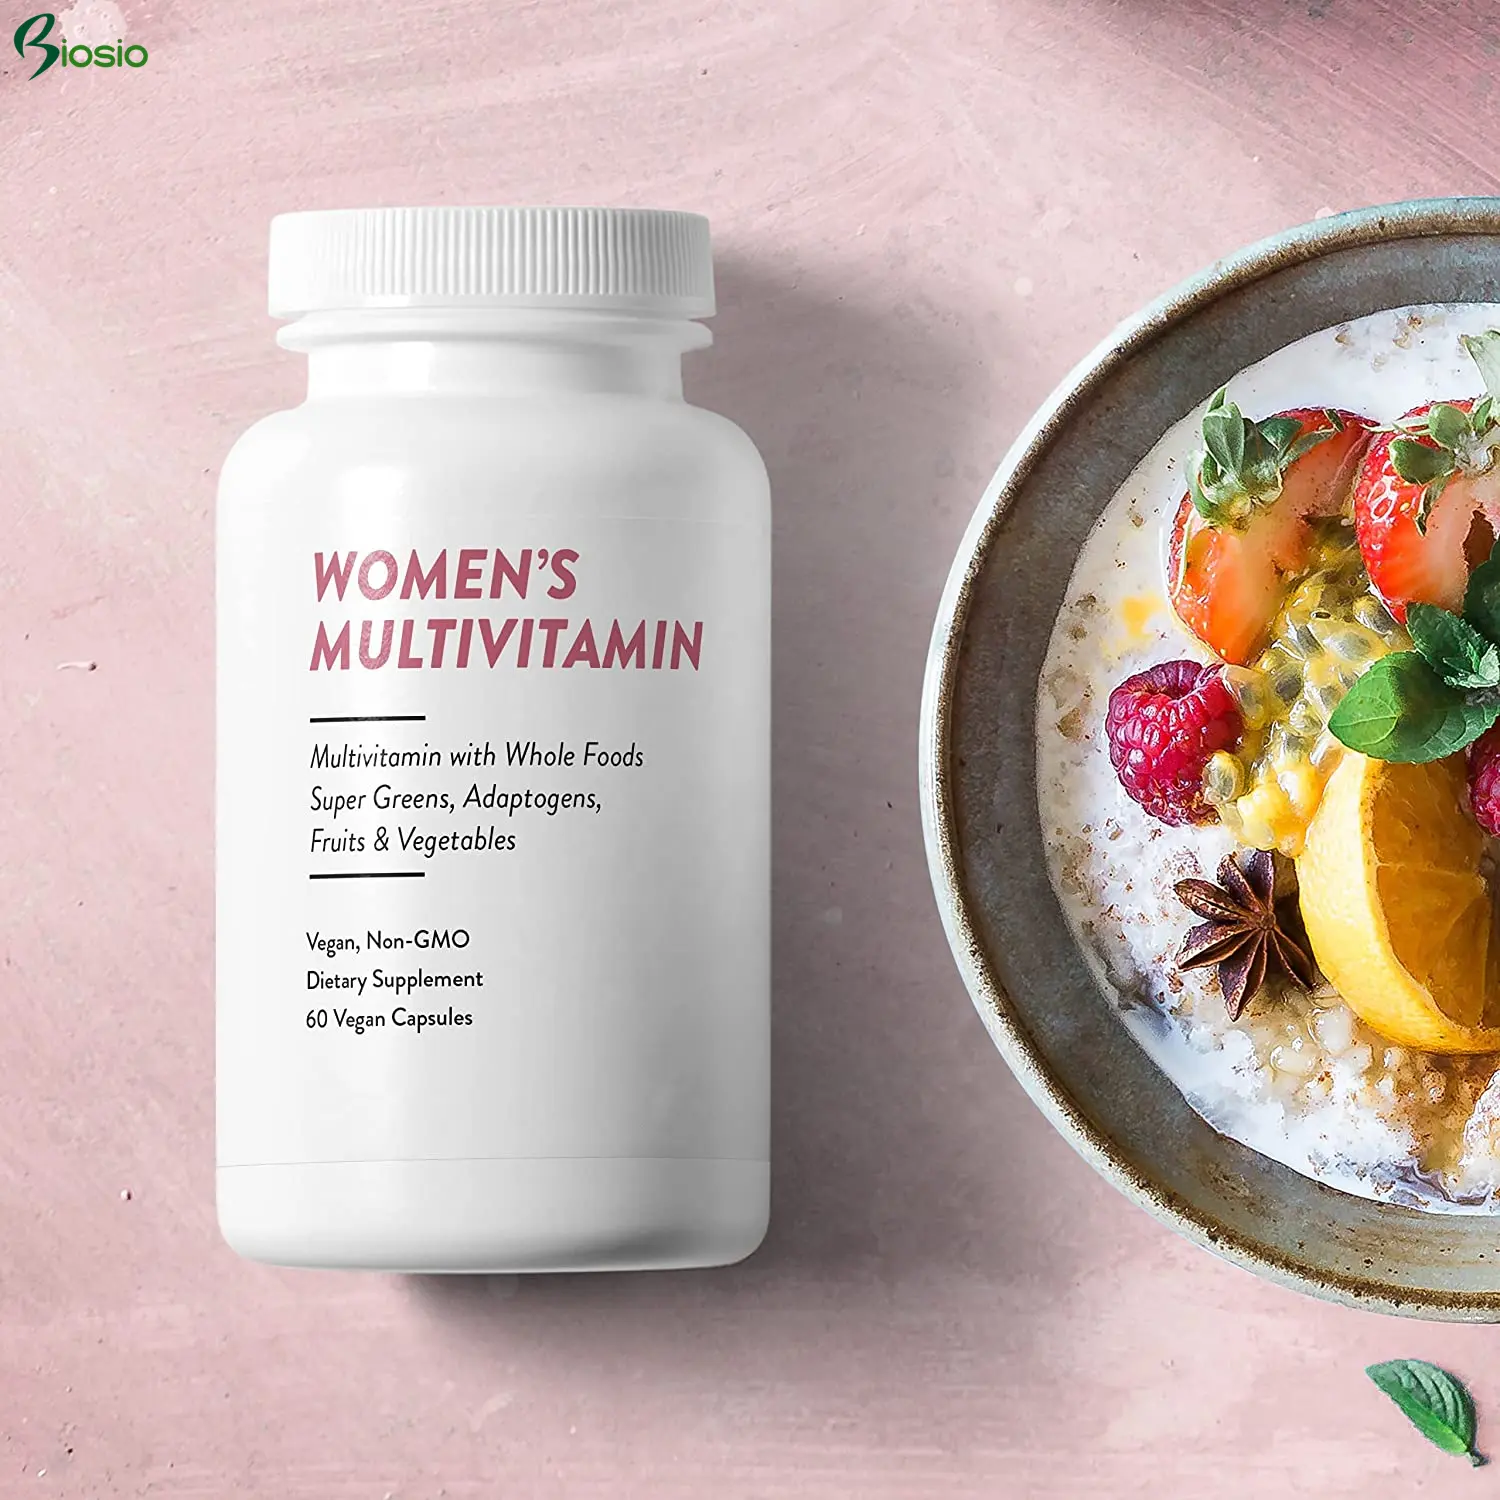 Cápsula de vegan multifuncional, cápsula para mulheres com base em plantas, vitamina a/b/e/d3 multivitamina para suplementação diária